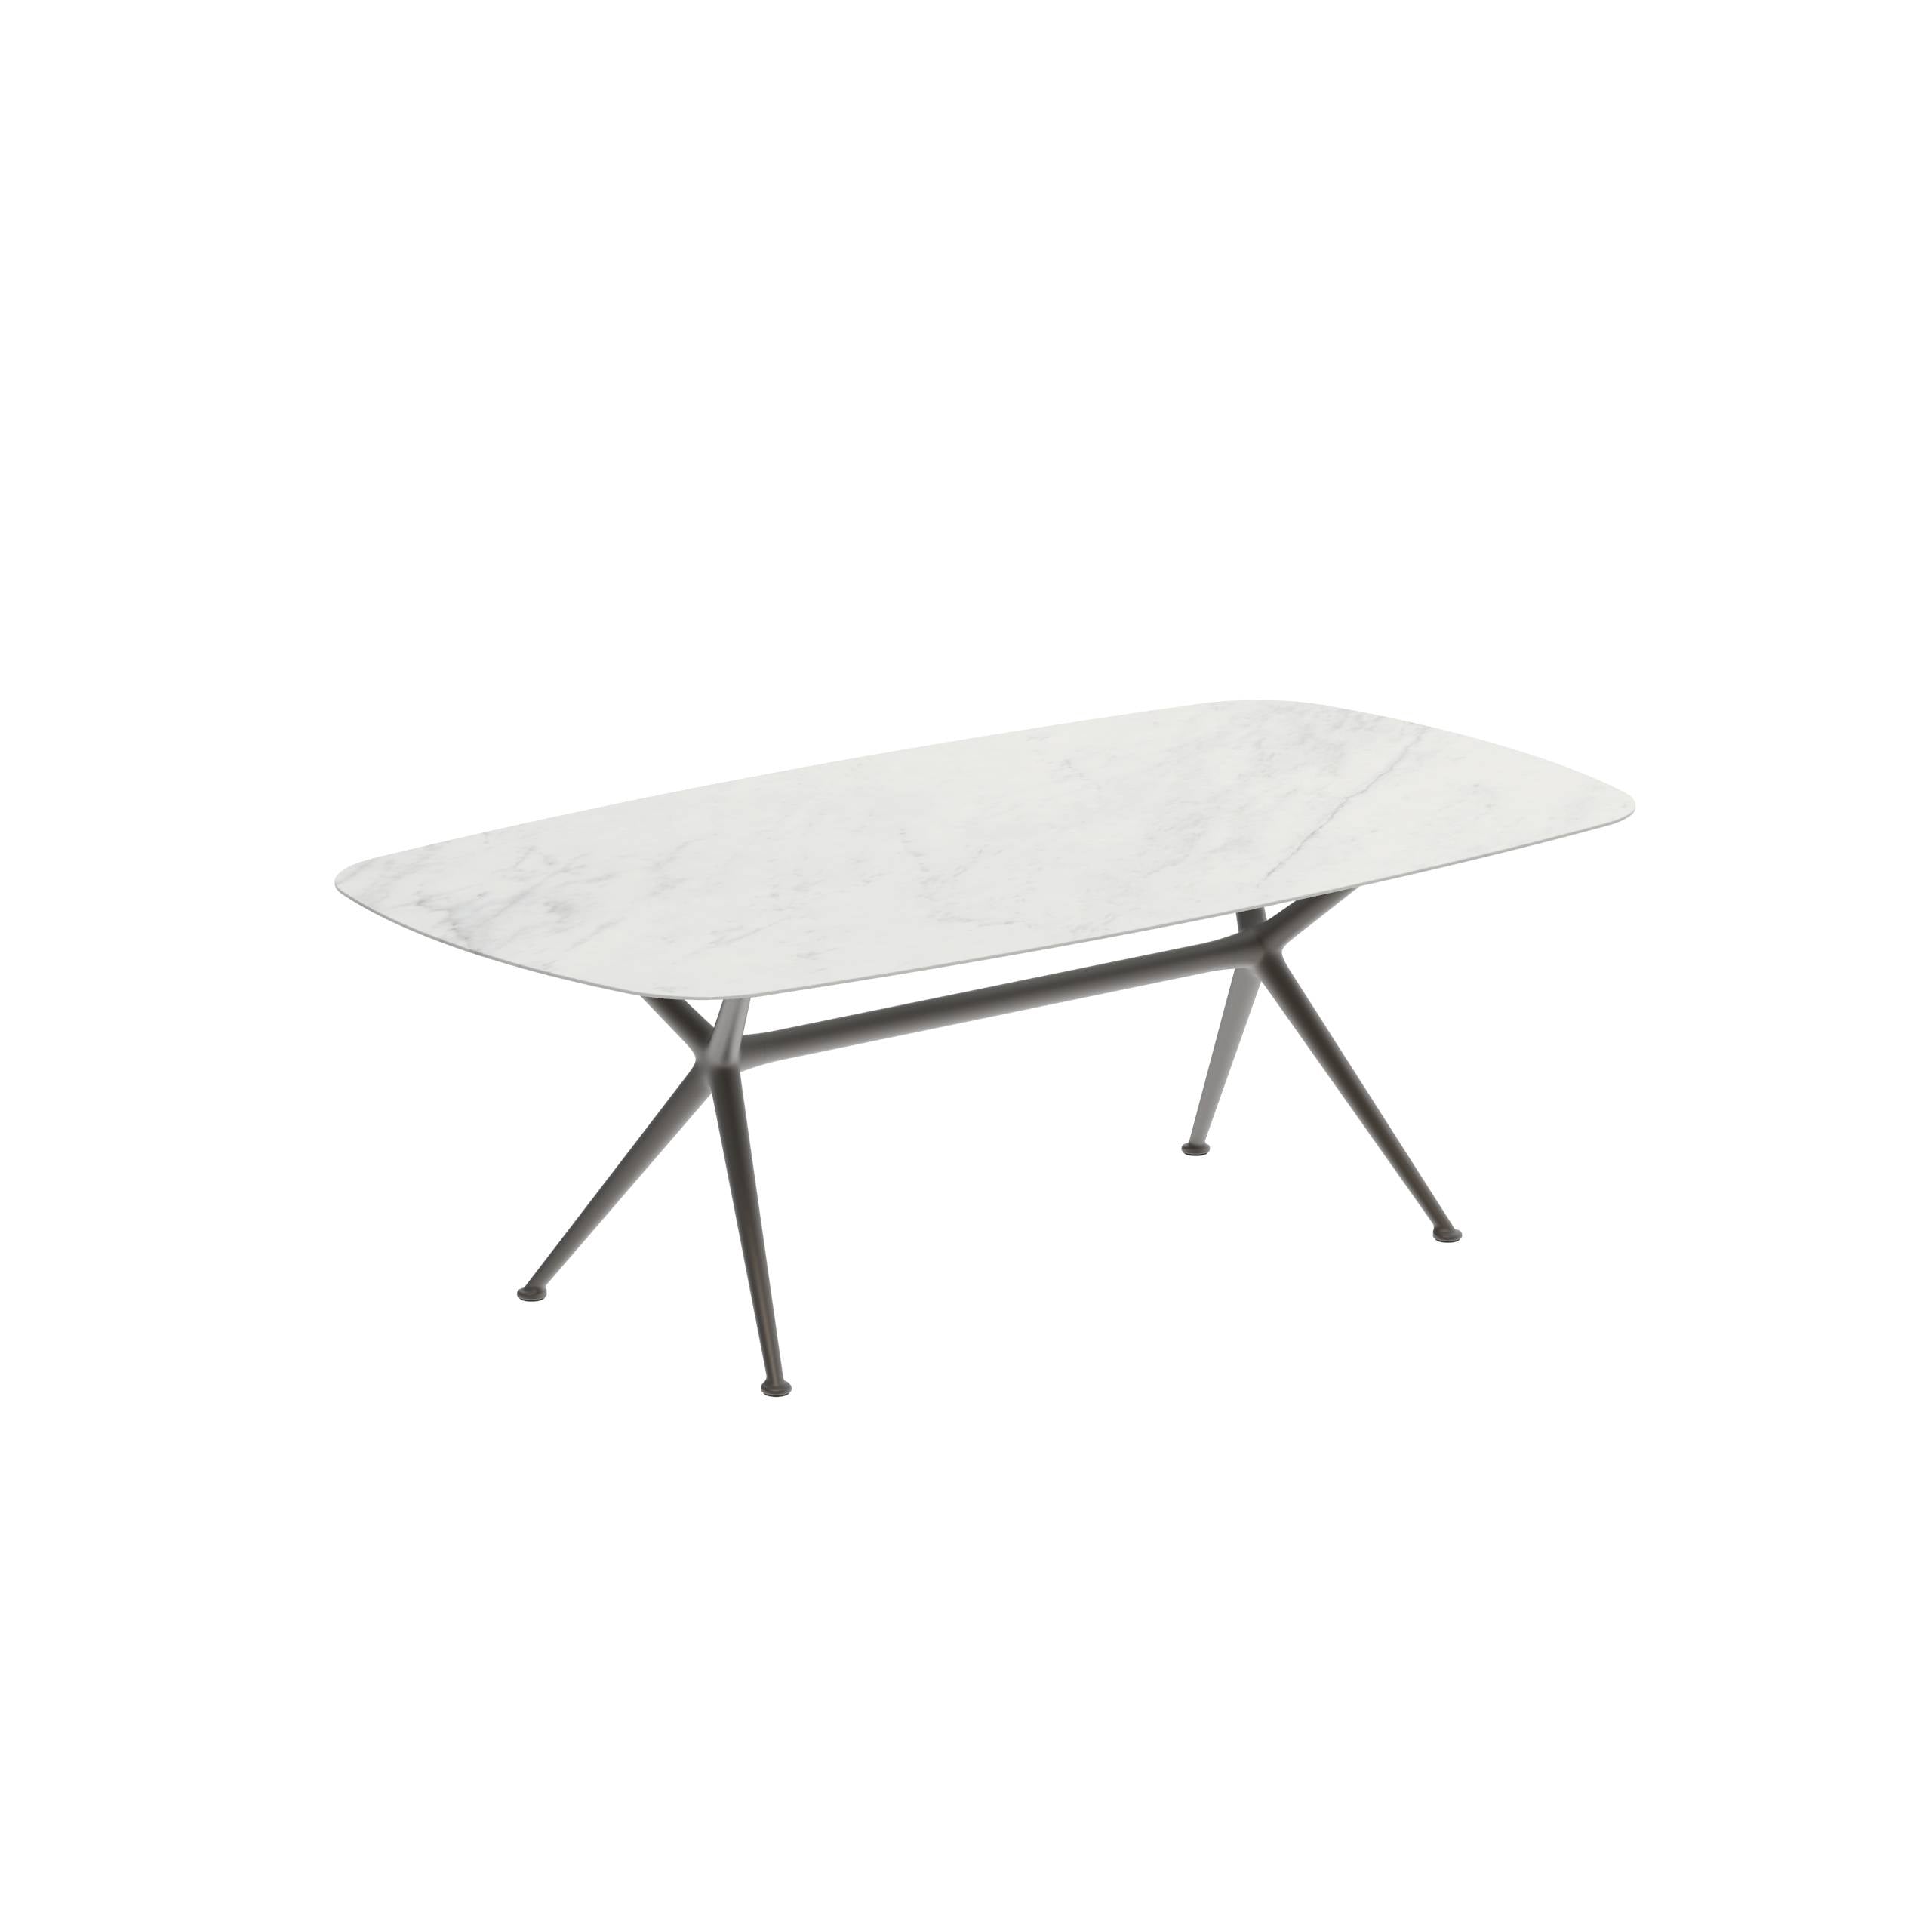 Exes Table 220x120cm Alu Legs Bronze - Table Top Ceramic Bianco Statuario